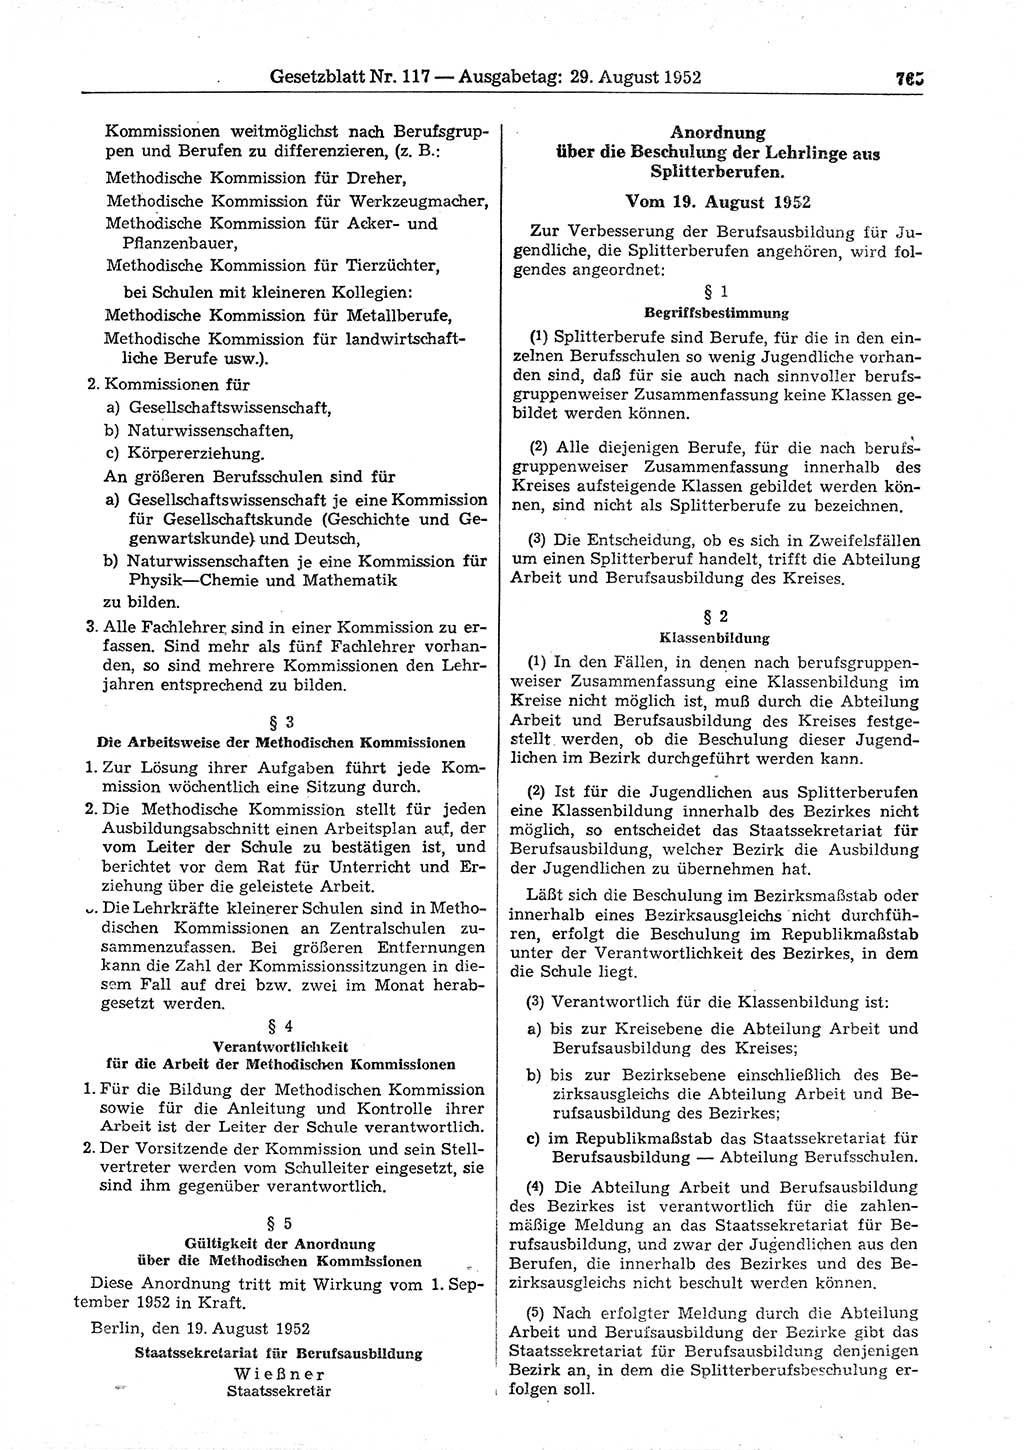 Gesetzblatt (GBl.) der Deutschen Demokratischen Republik (DDR) 1952, Seite 765 (GBl. DDR 1952, S. 765)